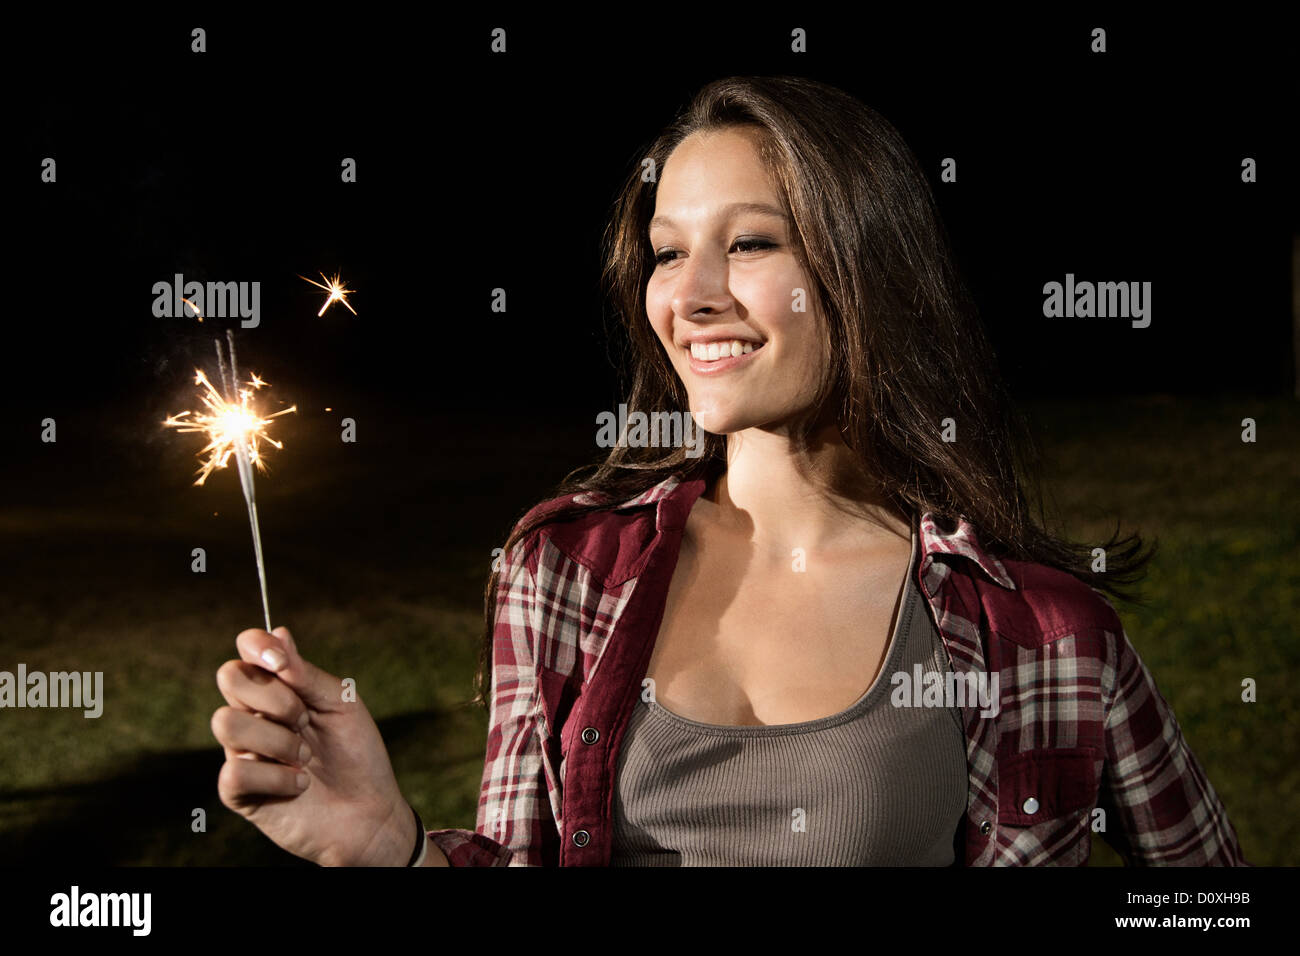 Girl holding sparkler Stock Photo